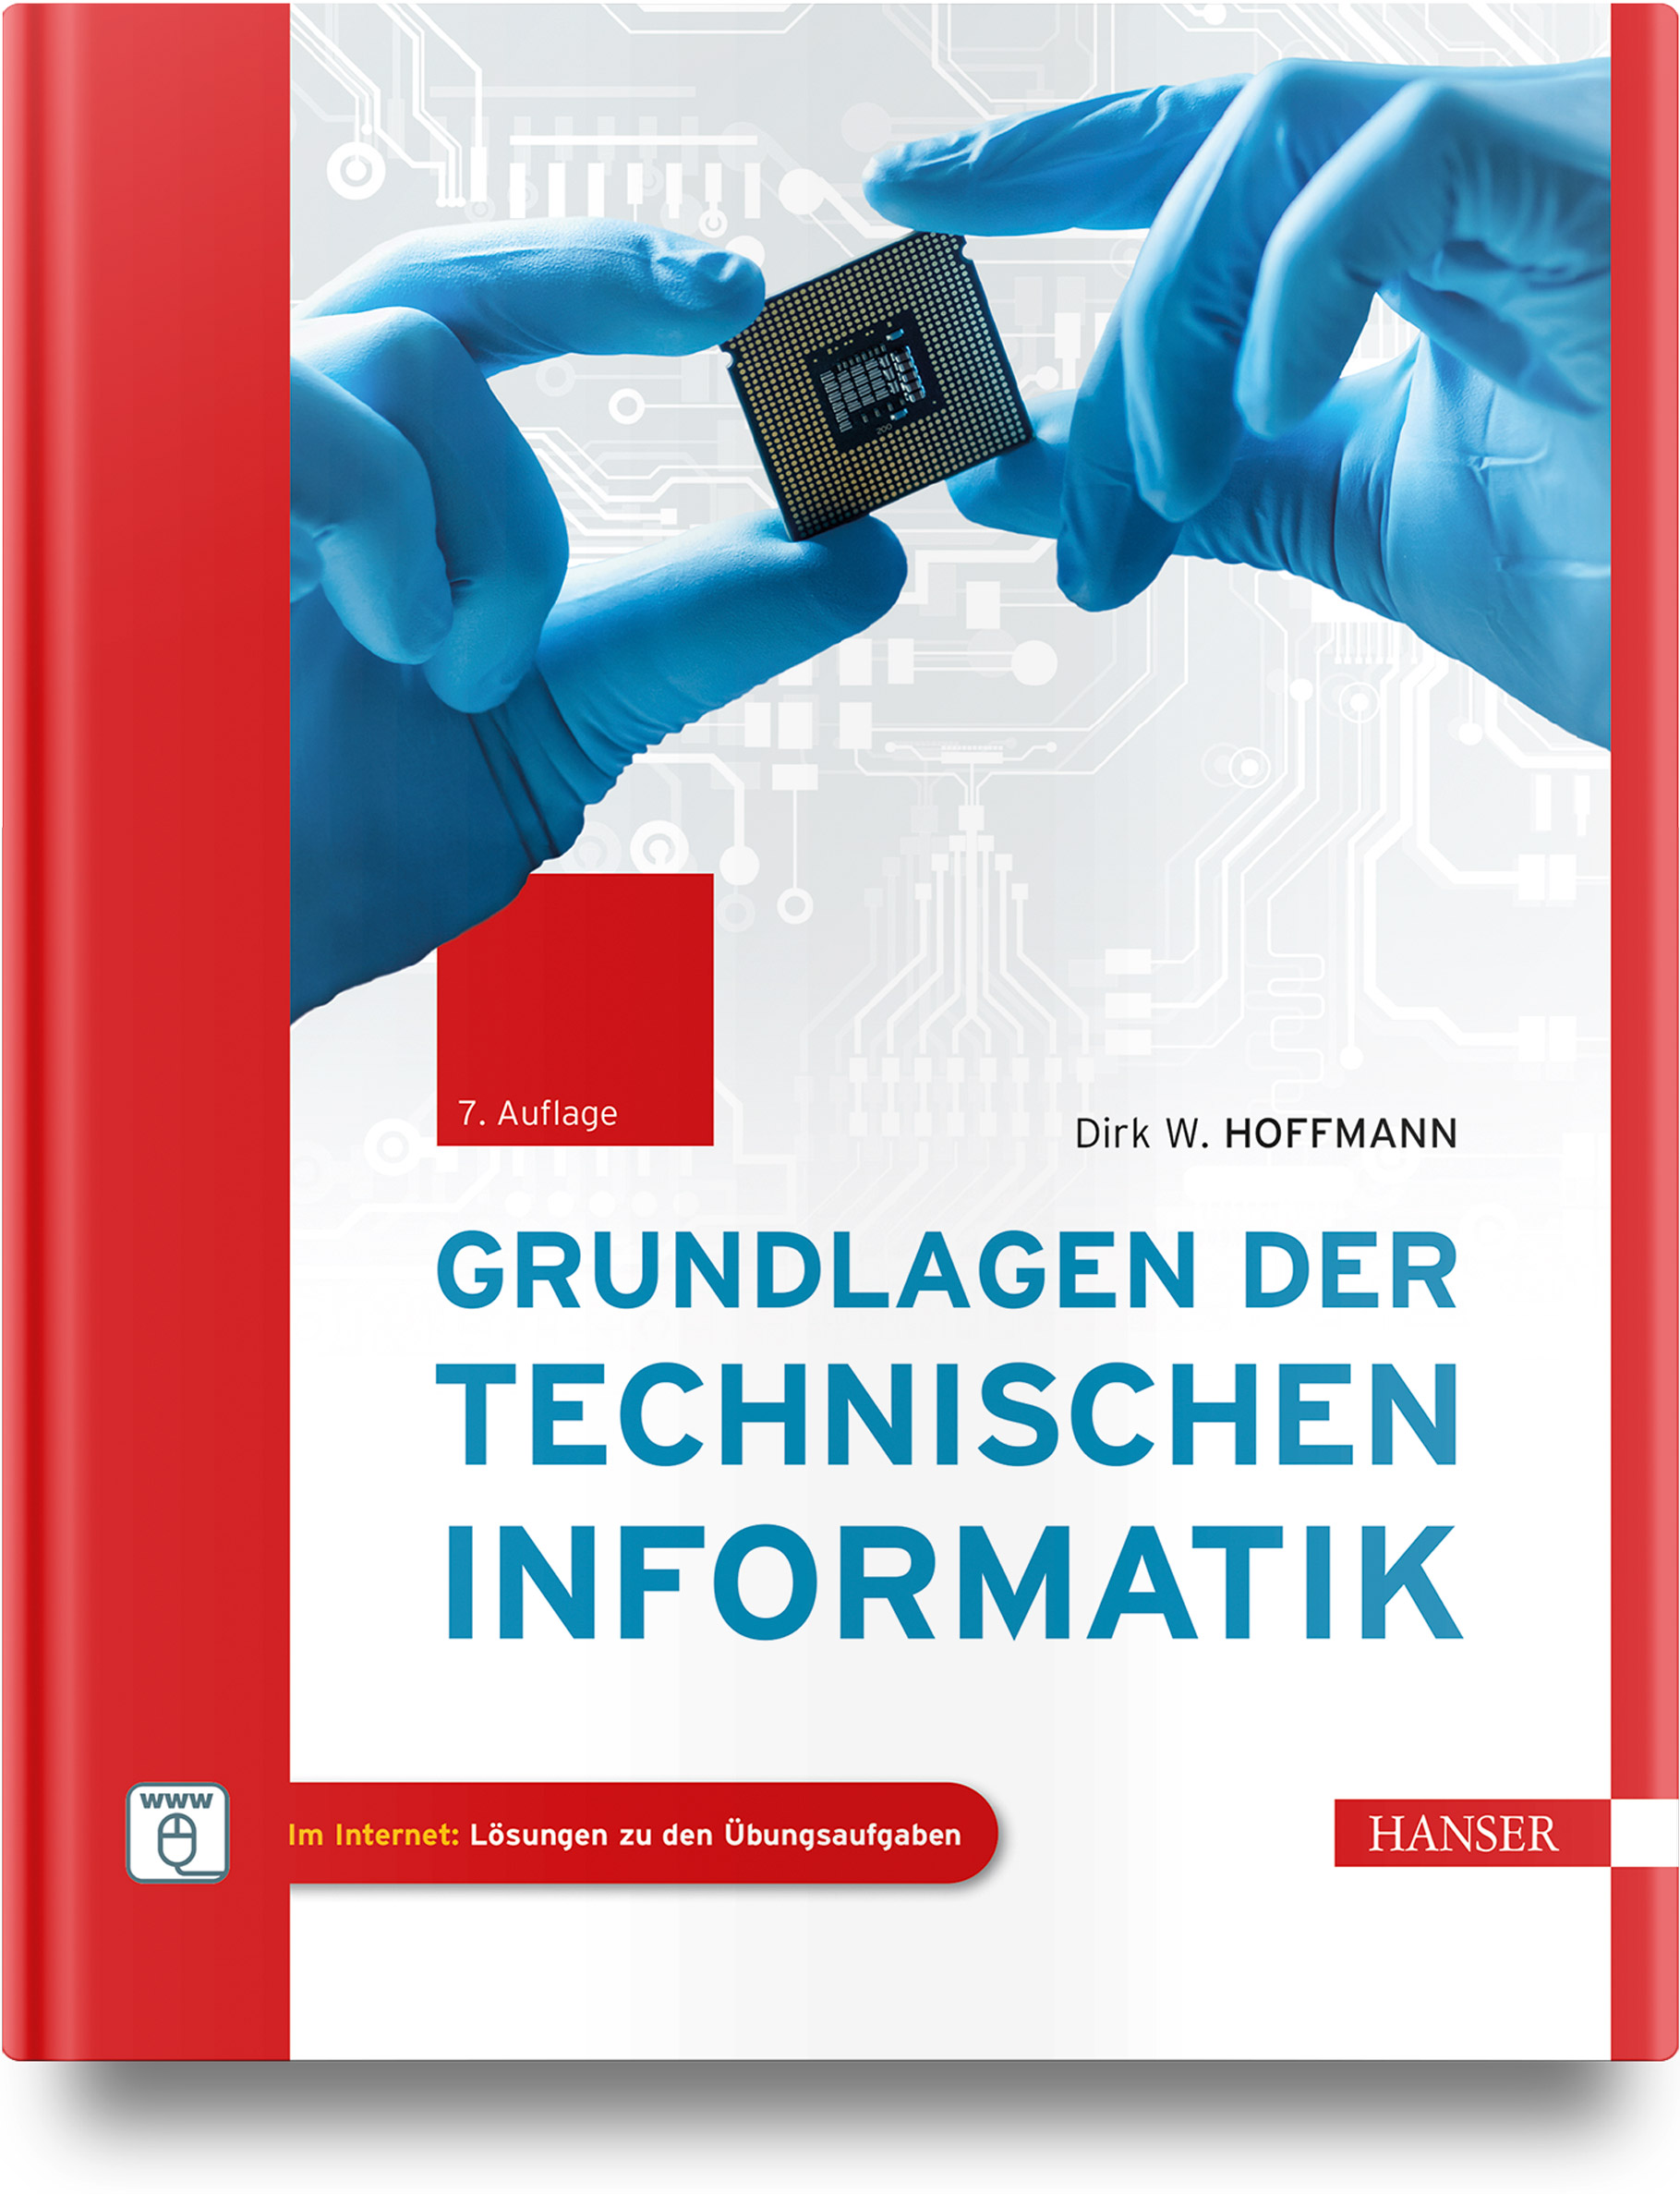 Grundlagen der technischen Informatik (7. Auflg.)